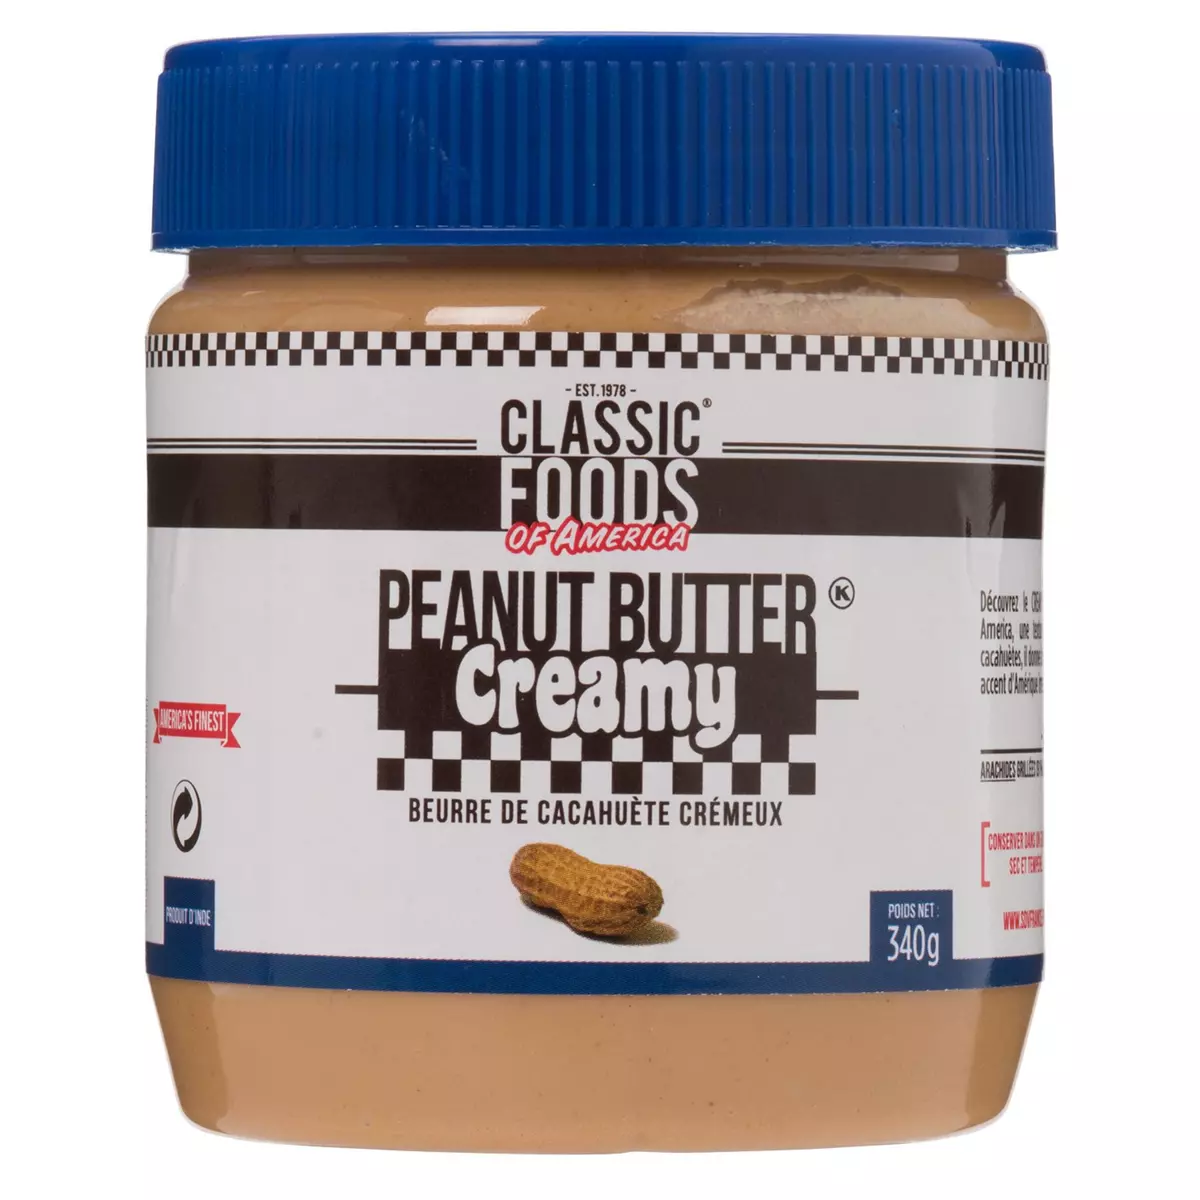 Peanut Butter Crunchy Menguy's - sans huile de palme